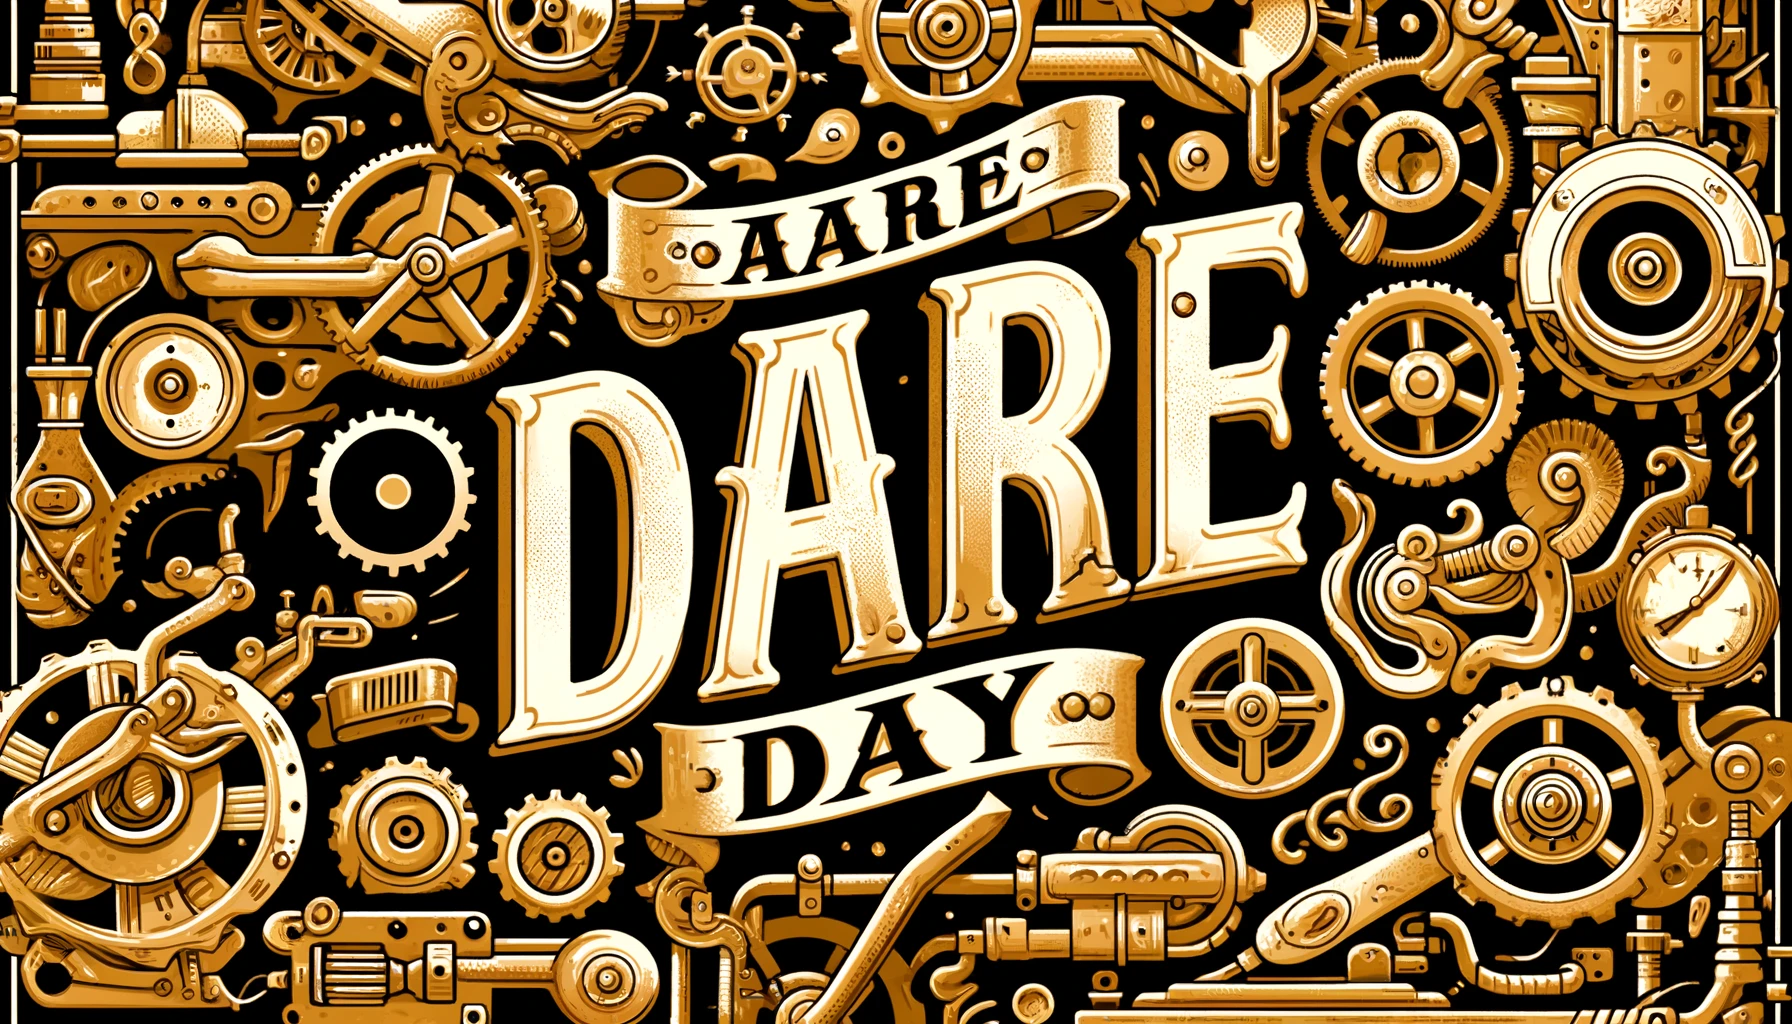 Dare Day